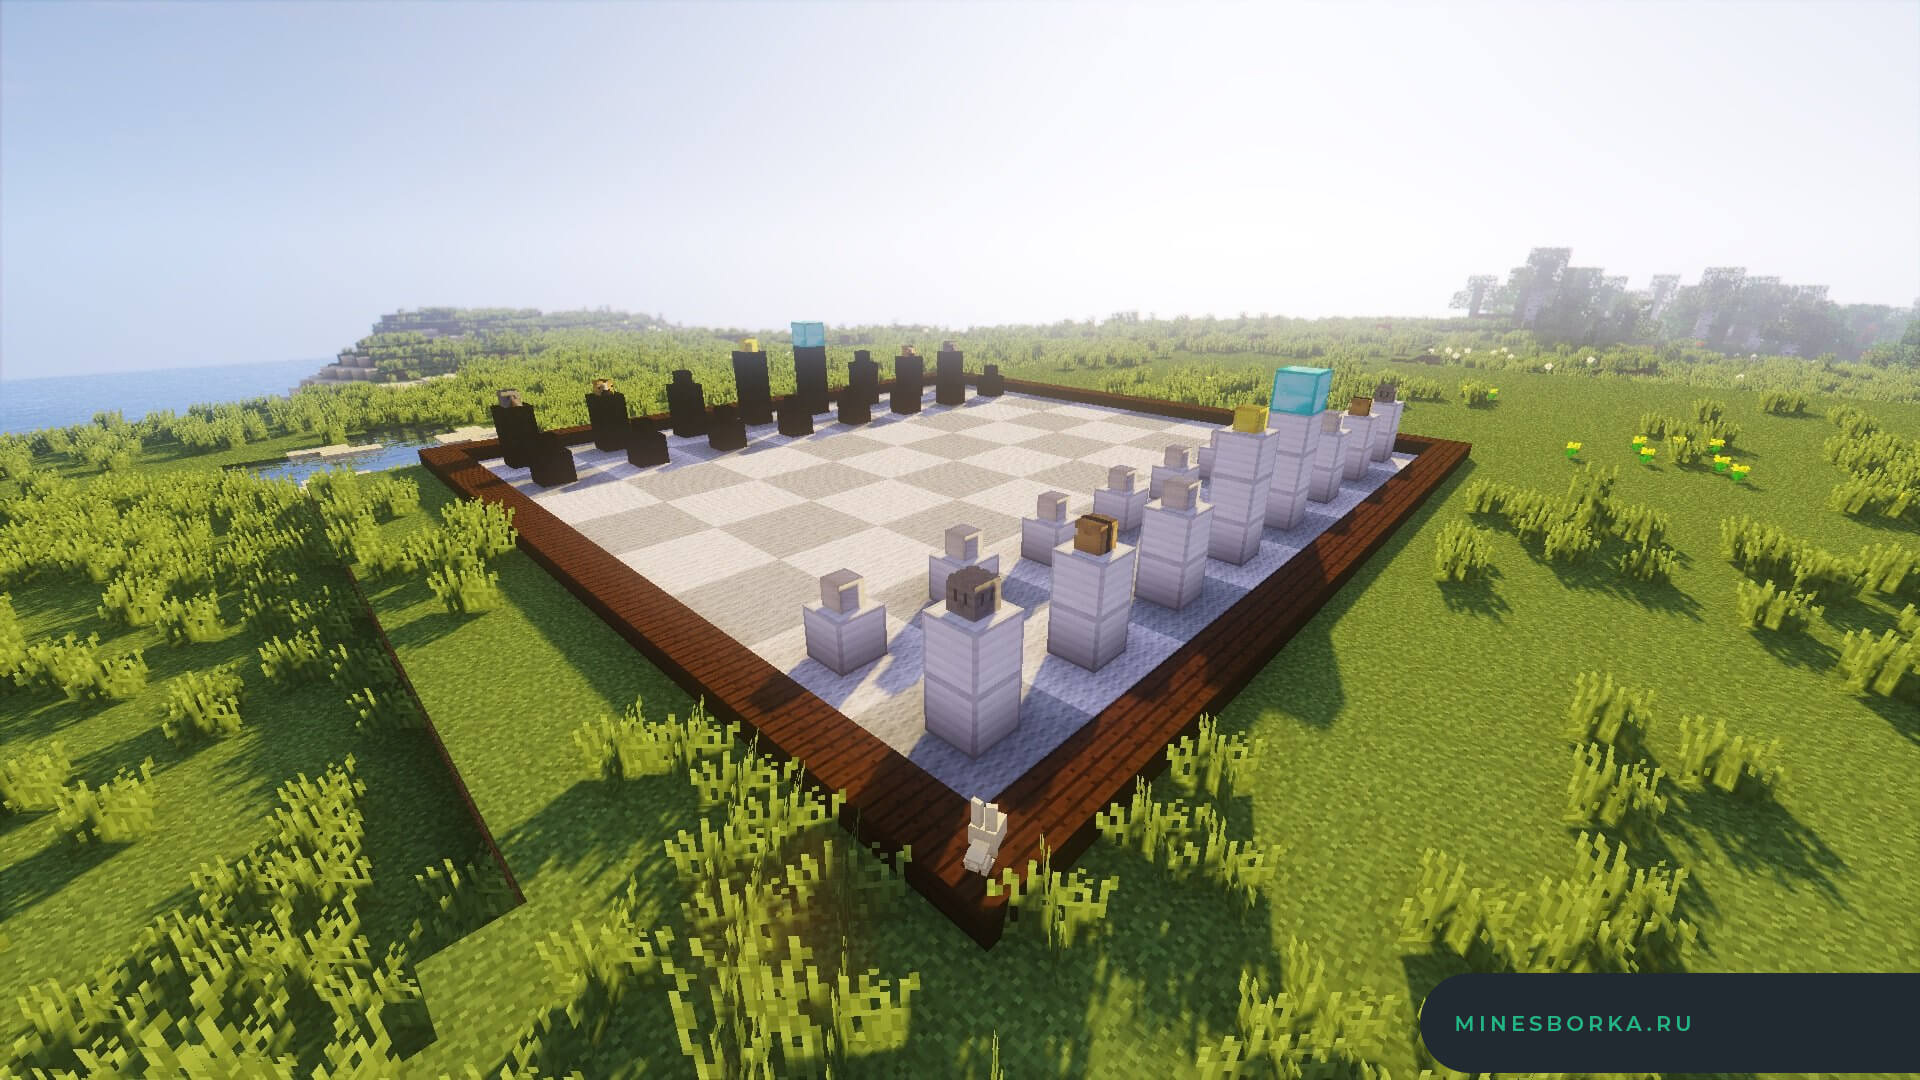 Скачать плагин MineChess | Настоящие шахматы в виде мини-игры на сервер Minecraft